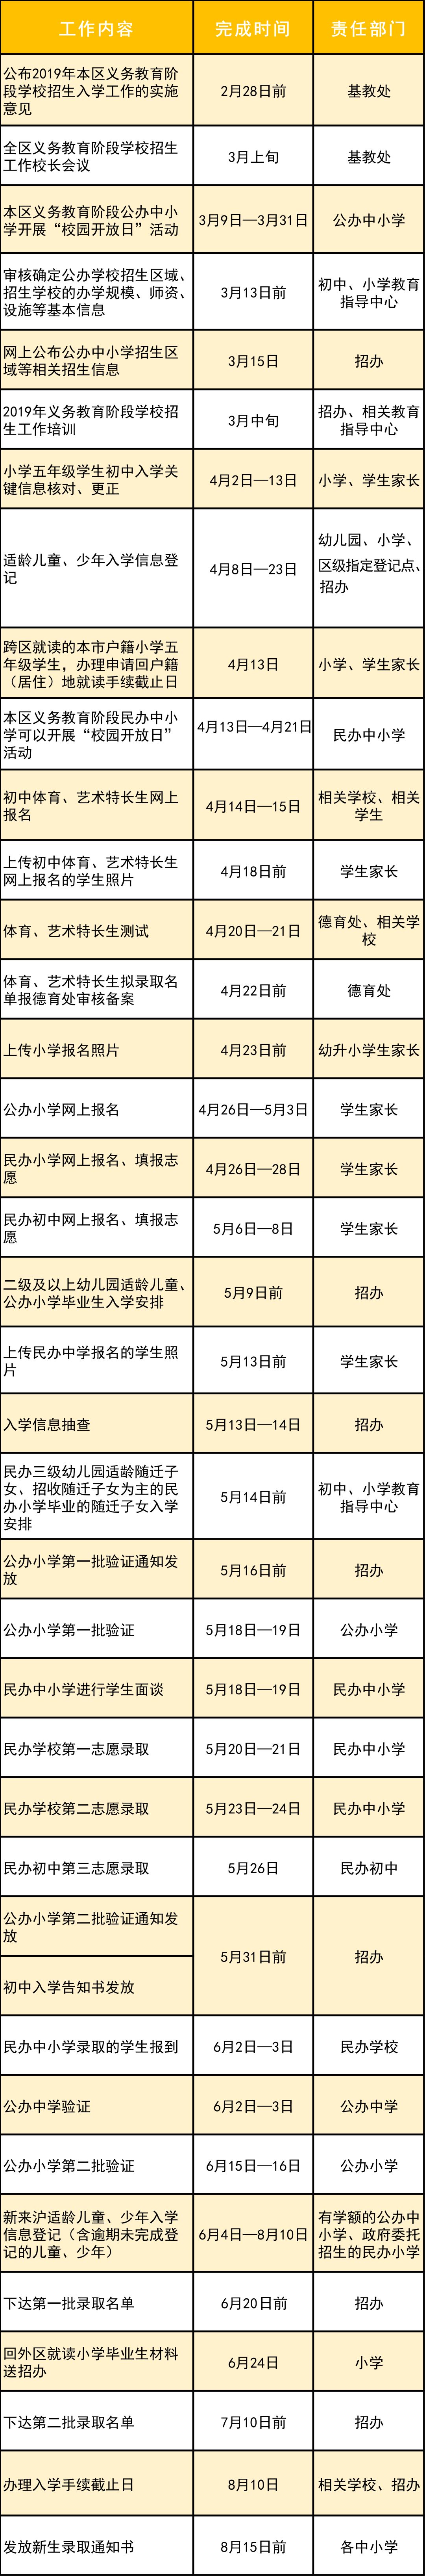 上海浦东新区2019、入学实施意见及细则发布